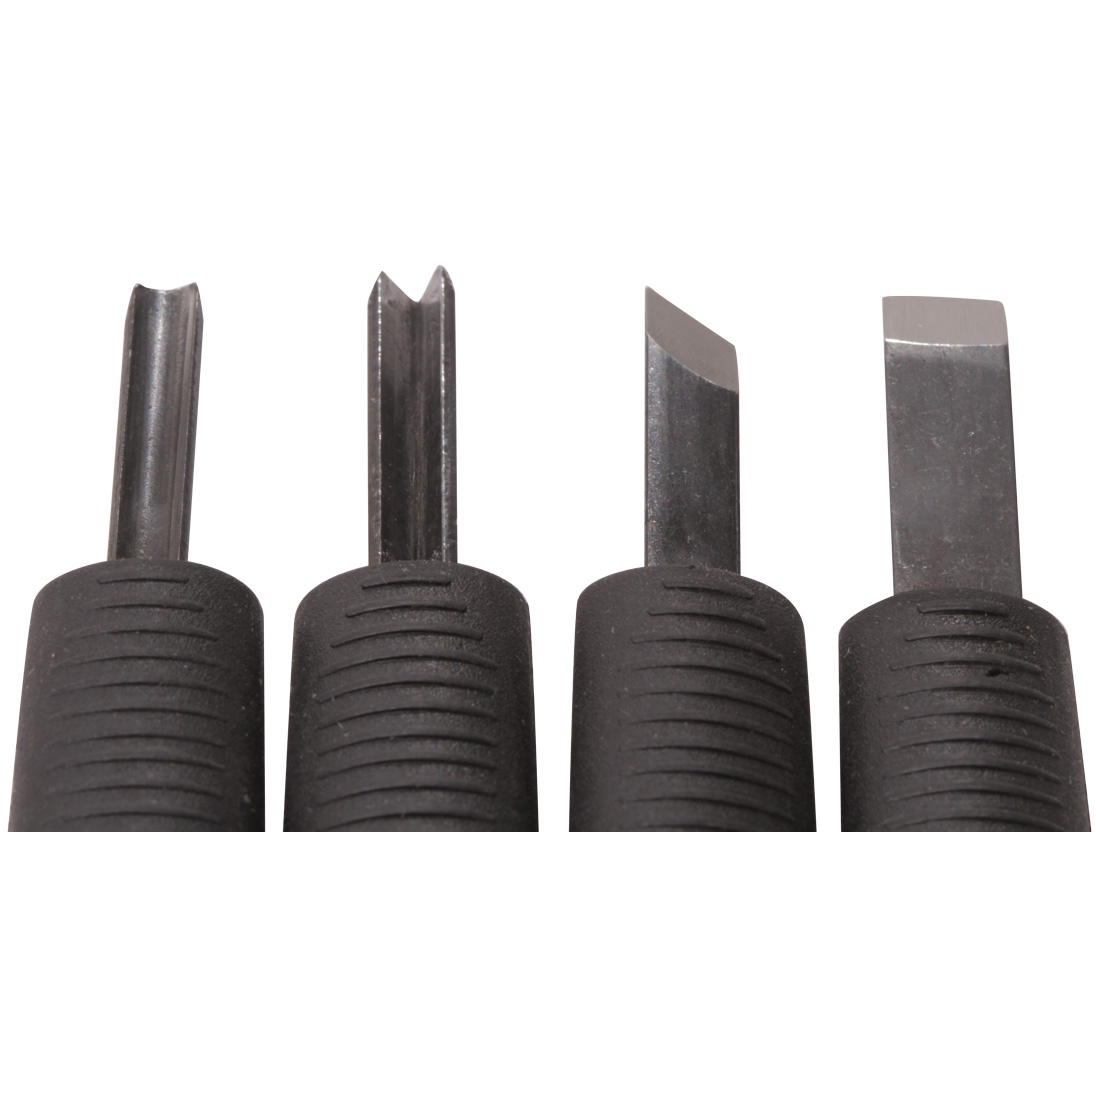 Original Robox RBX01-ACC-TK Robox Carving Tools - Set of 4 Chisels (RBX01-ACC-TK)